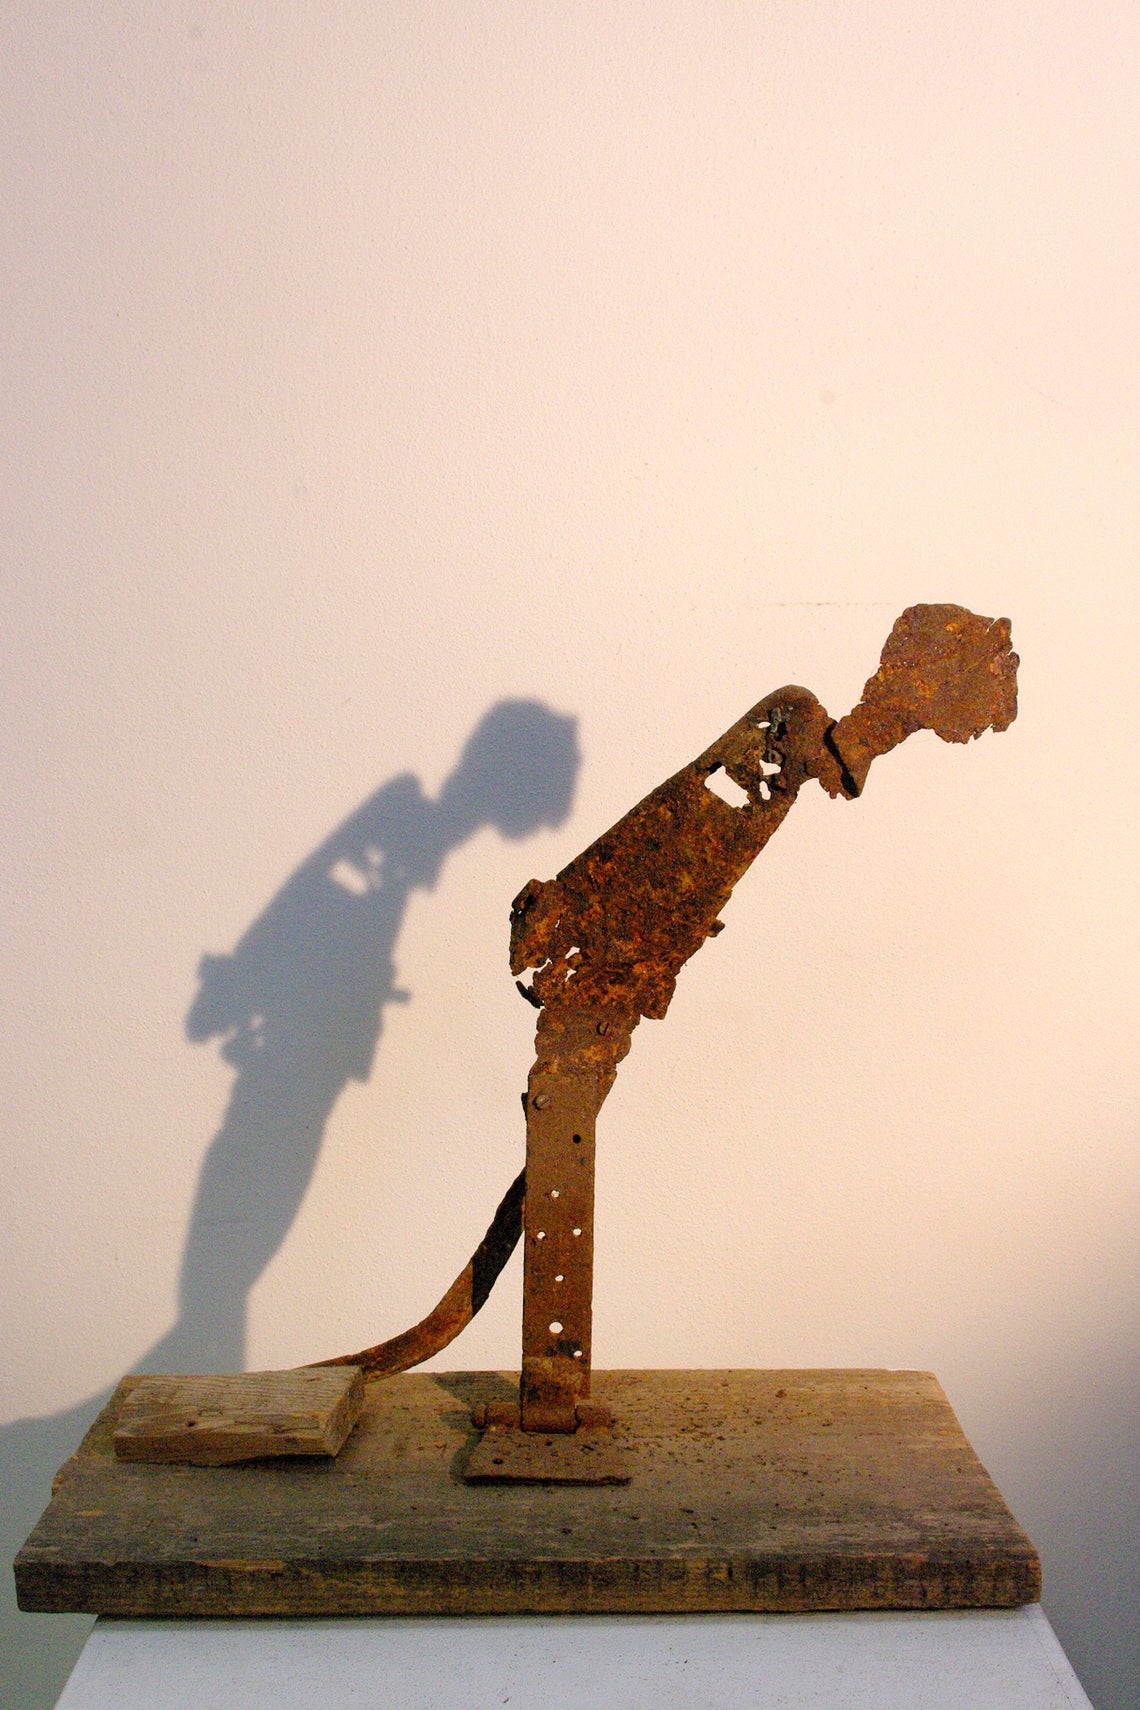 Antonio Panzuto - sculture Ruggini - Figura danzante 8 Il Pensatore - Rusty sculpture Dancing figure The Thinker